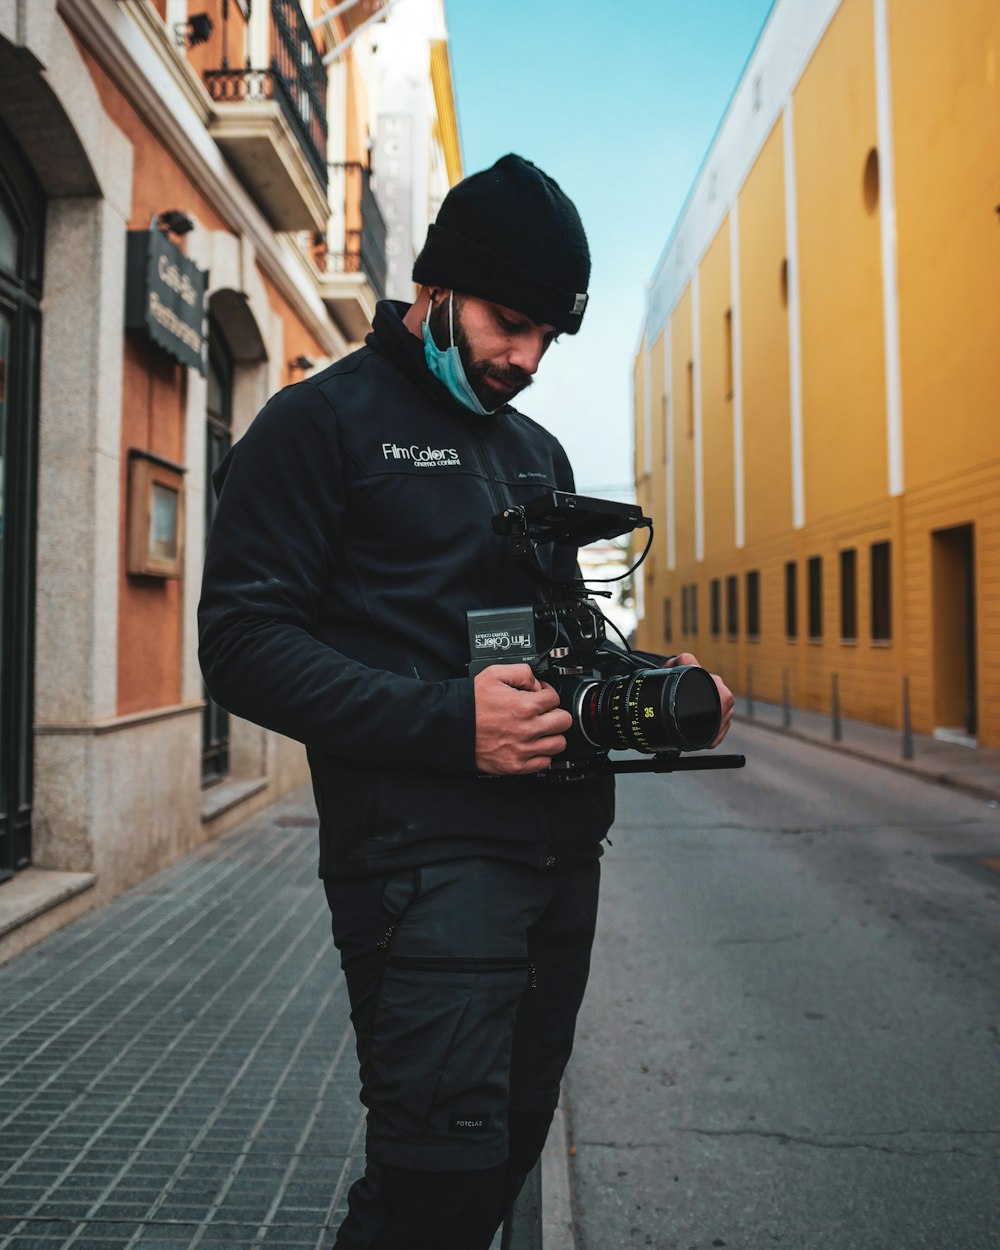 Un homme debout dans une rue tenant une caméra